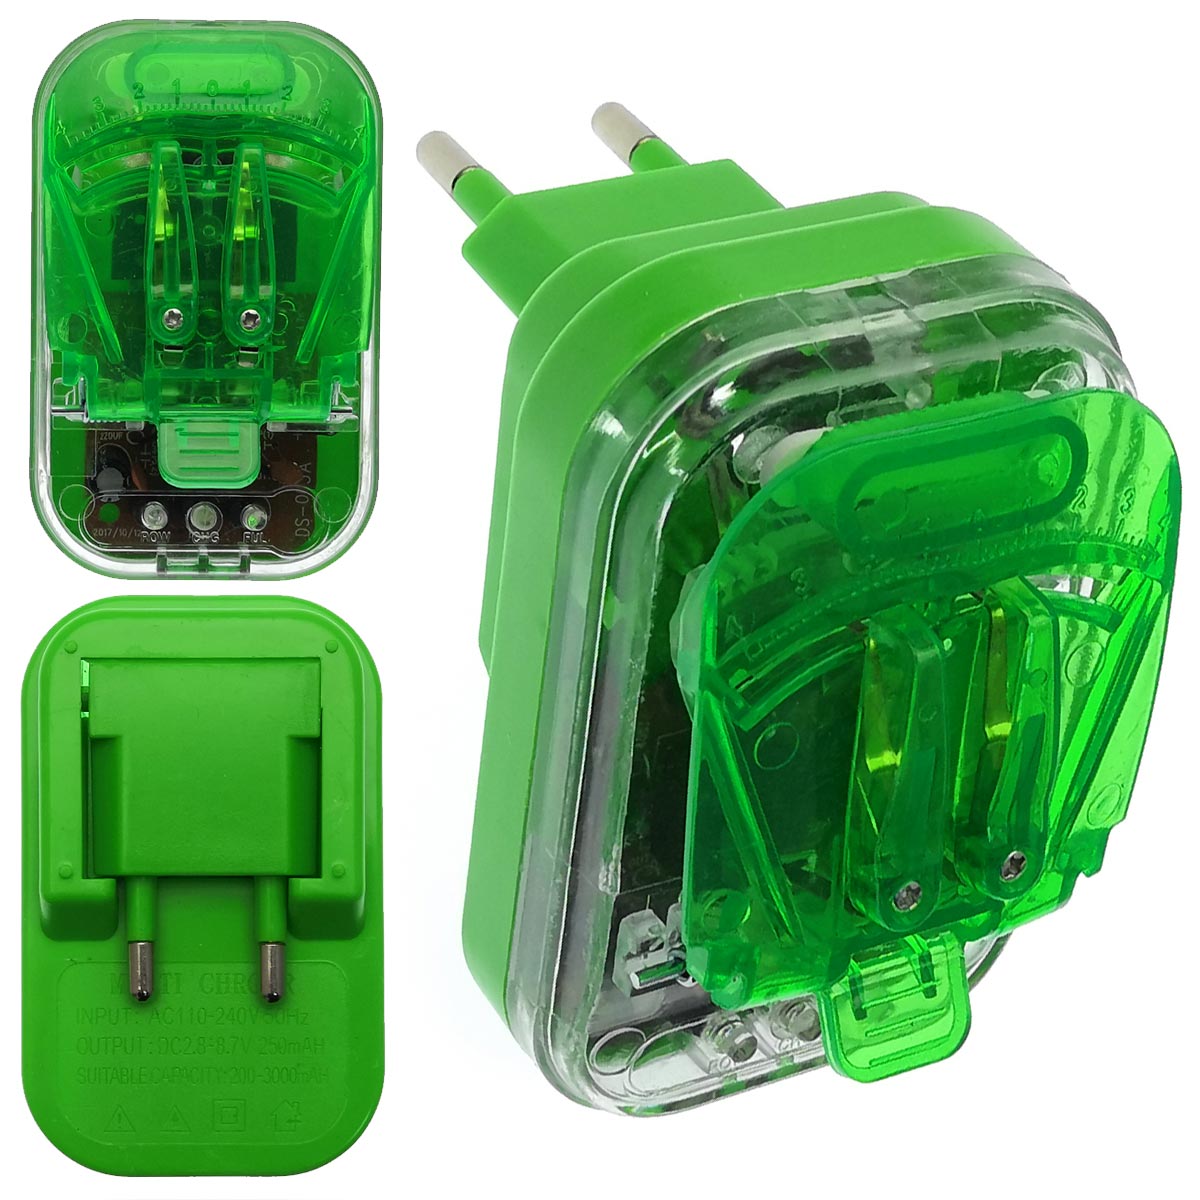 УСЗУ (Универсальное сетевое зарядное устройство) Лягушка MRM MR-130, 5V-1.2A, классическая, цвет зеленый